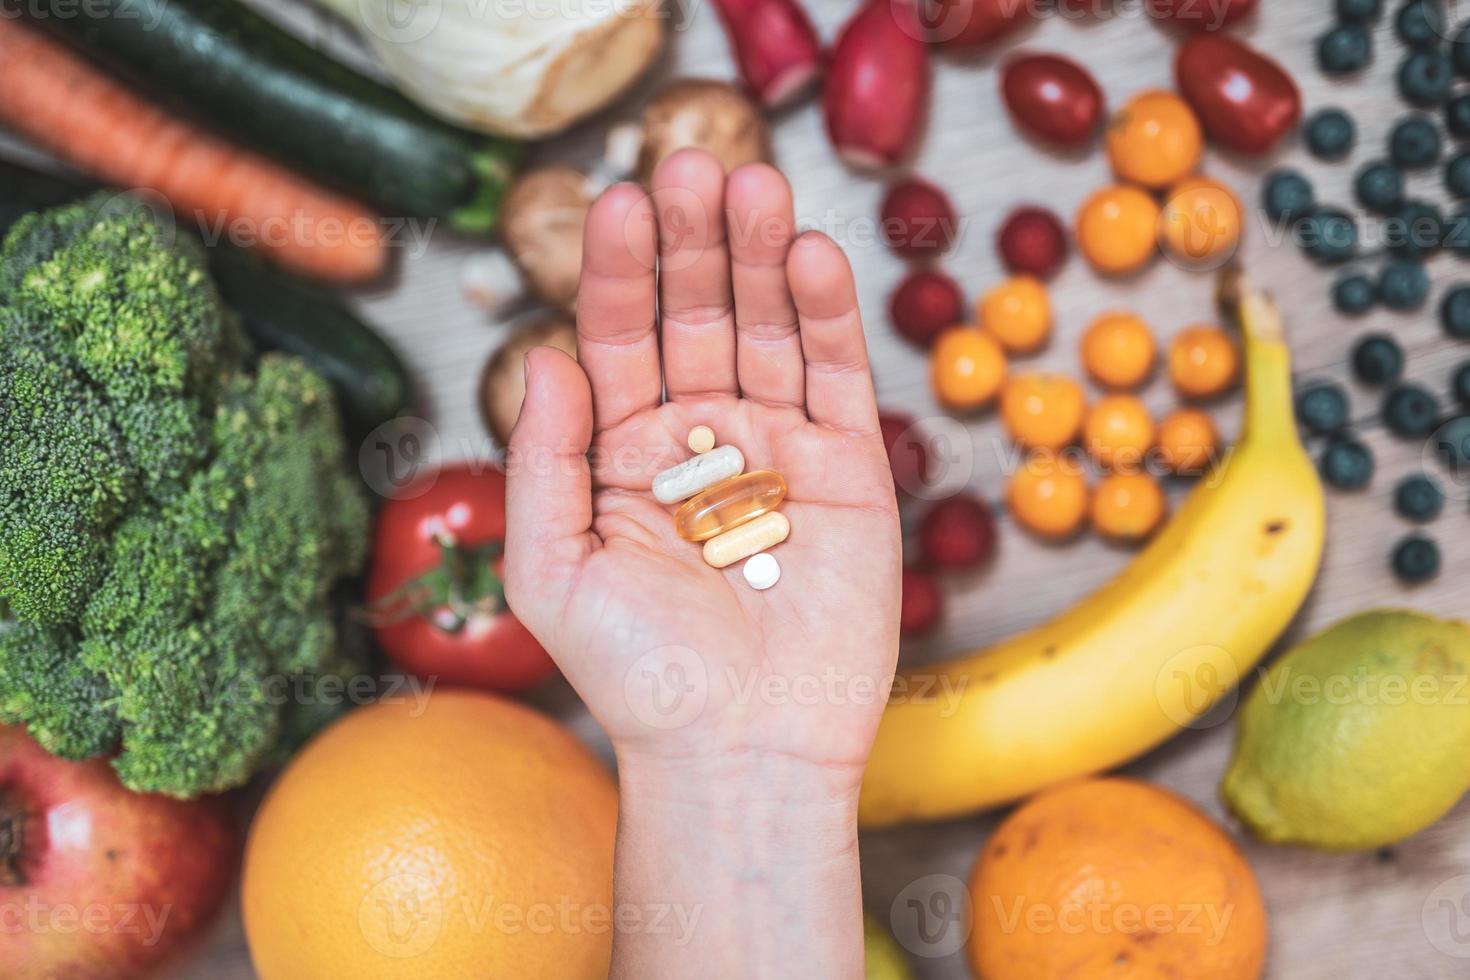 mano sujetando suplementos alimenticios sobre verduras y frutas para un estilo de vida saludable foto